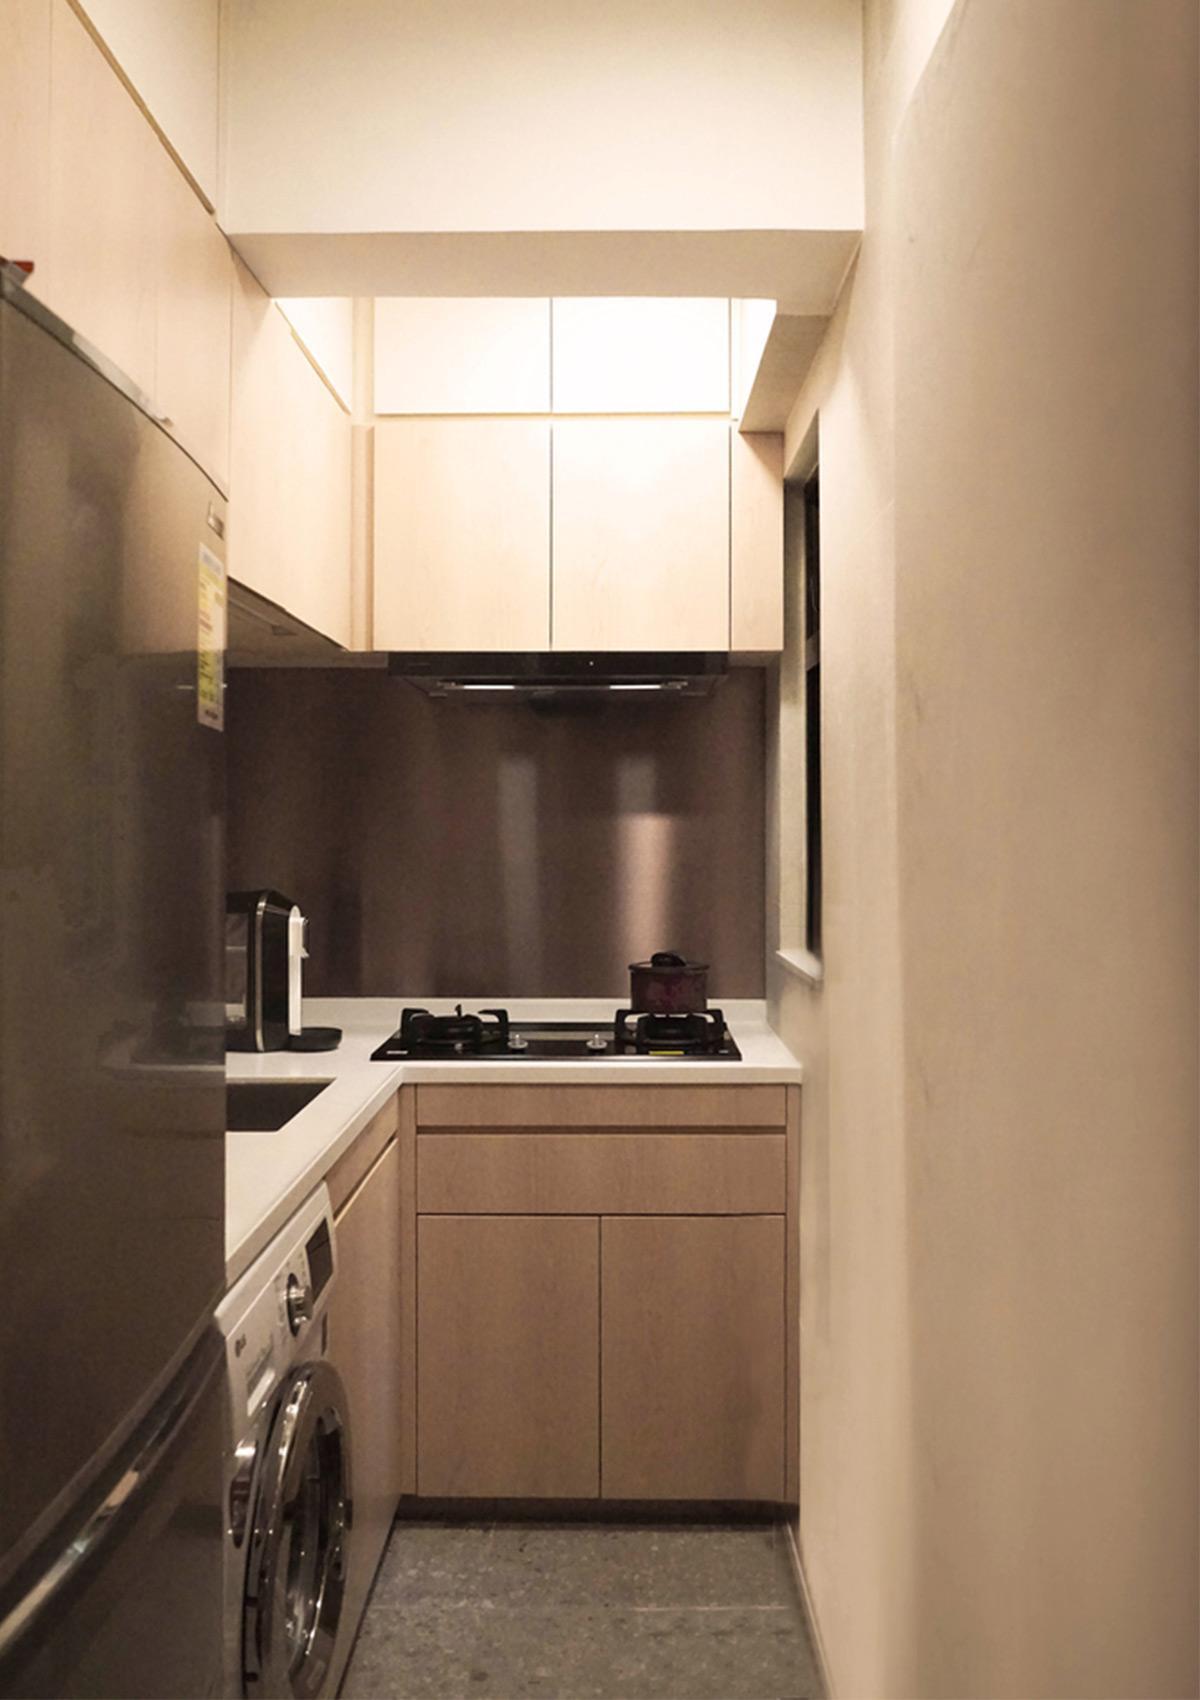 Giải pháp sắp xếp nội thất thông minh cho căn hộ có diện tích nhỏ